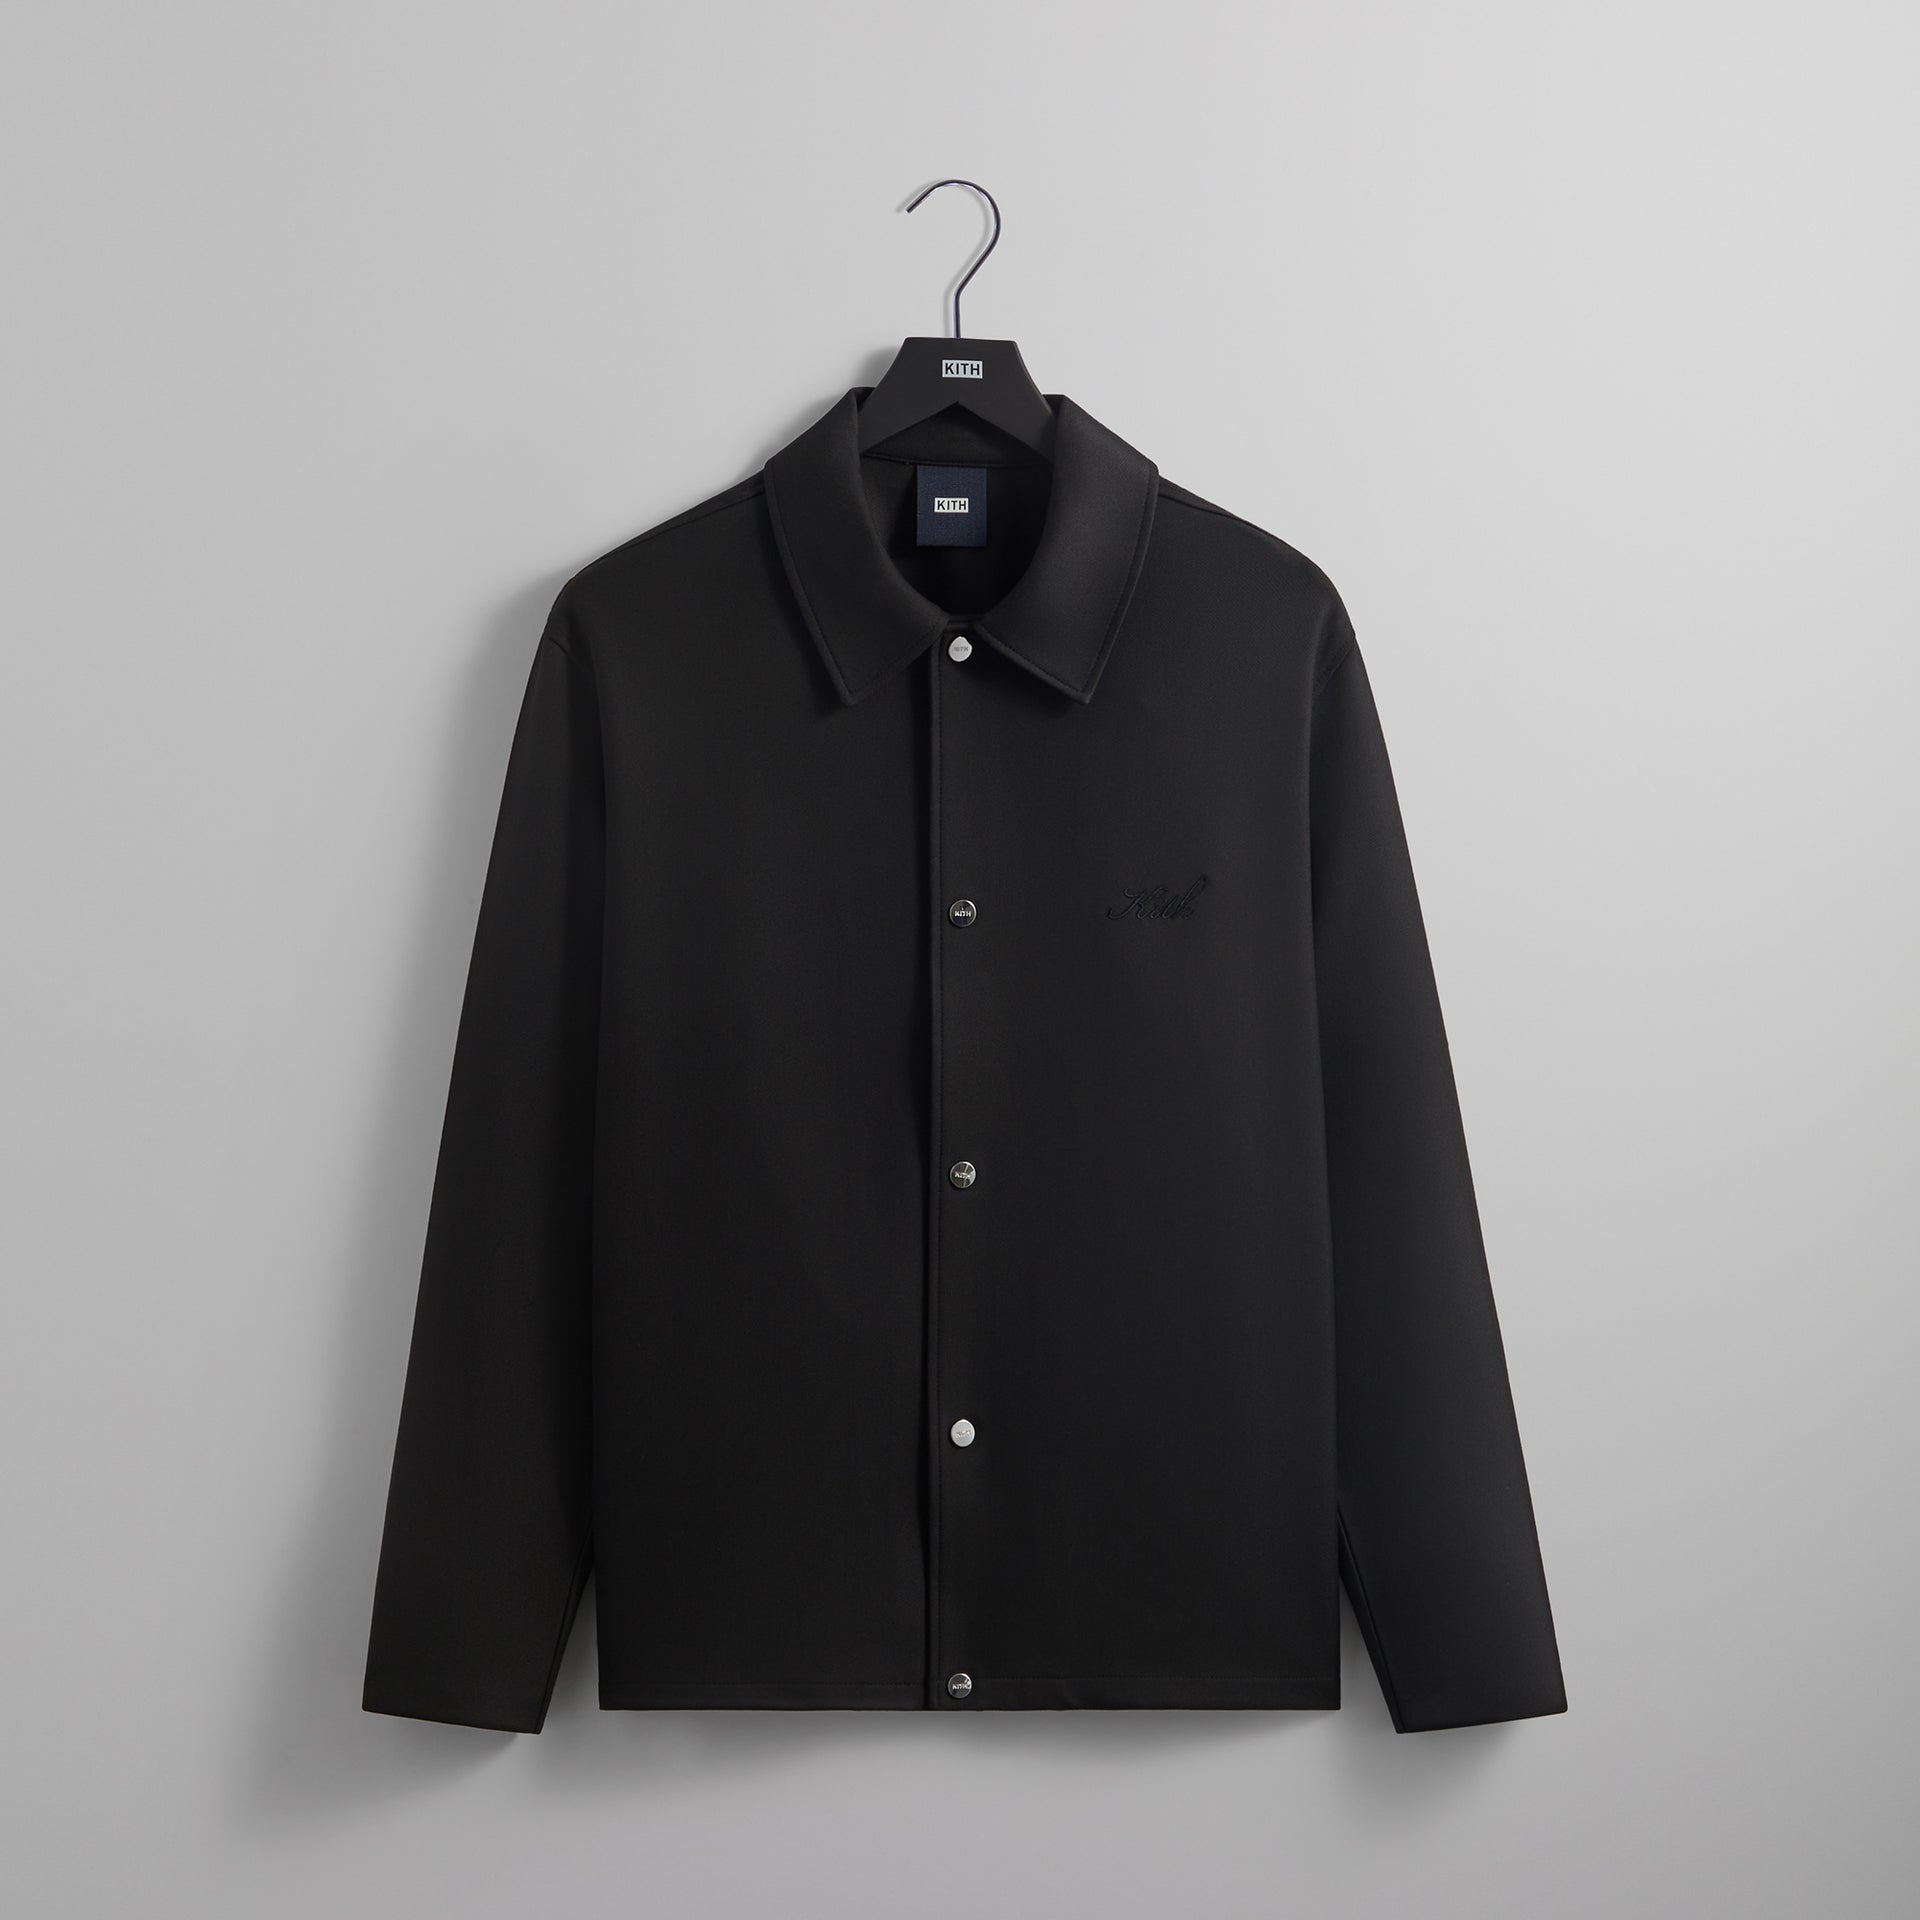 UrlfreezeShops Double Knit Coaches Jacket edition - Black